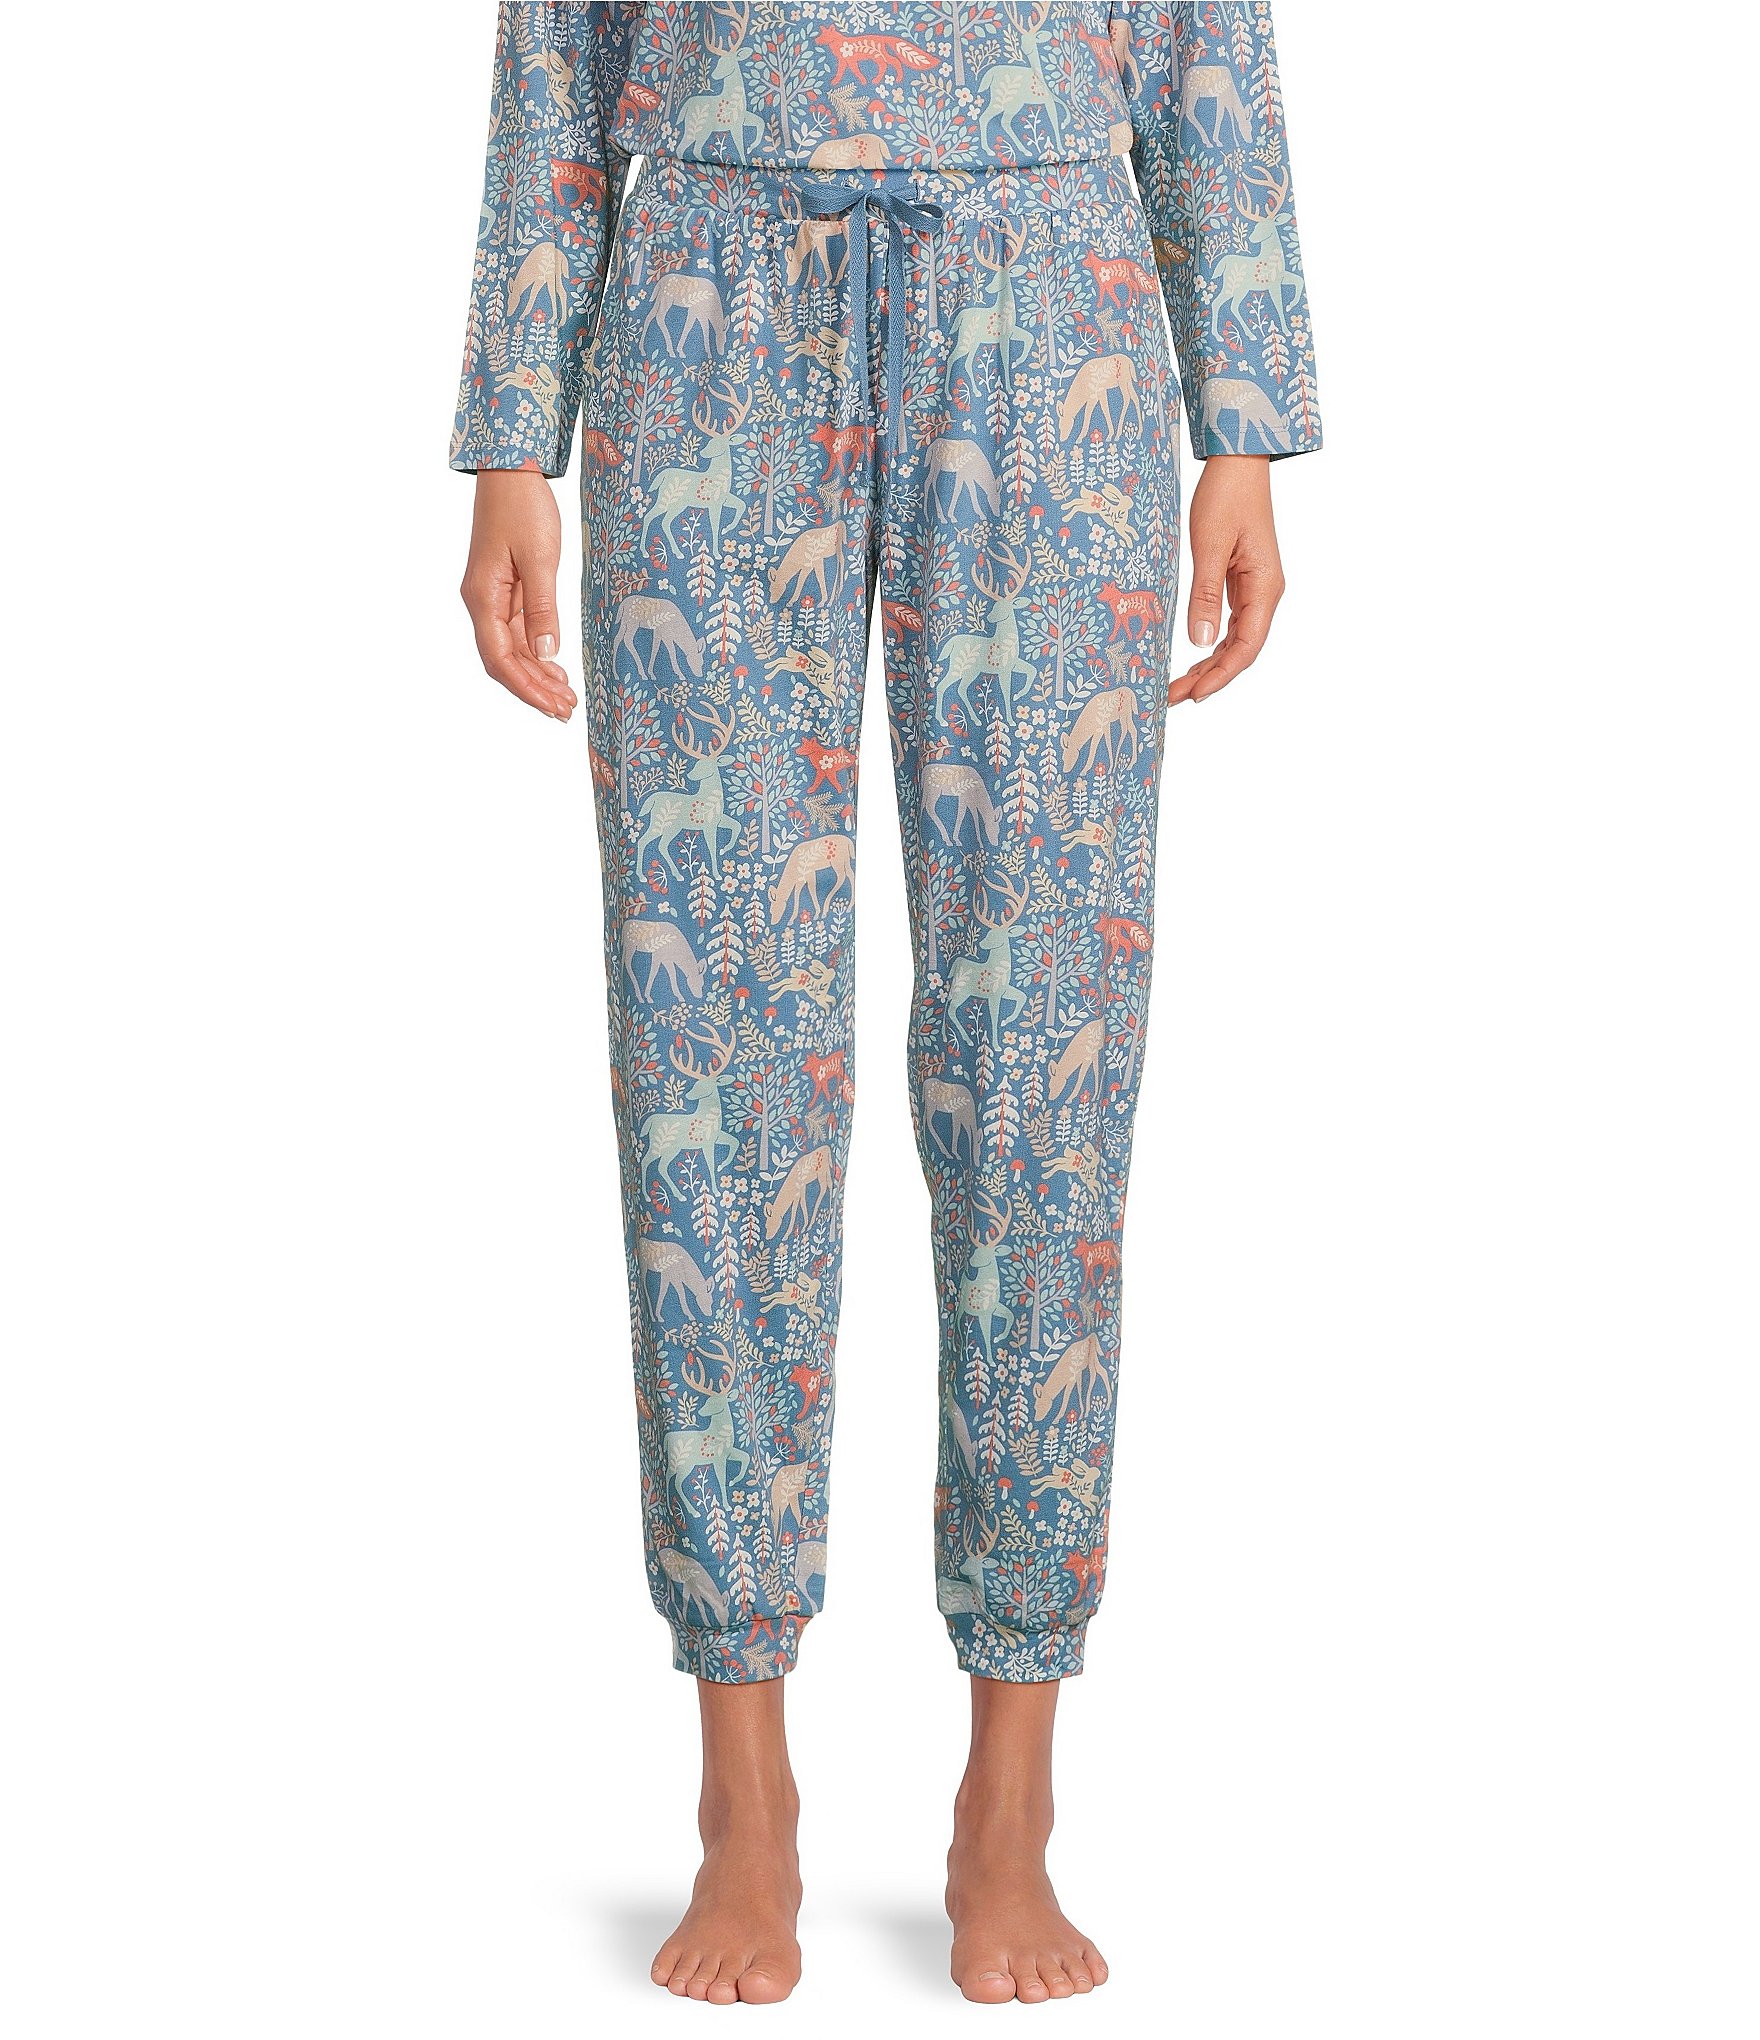 Women's Pajama & Sleep Pants